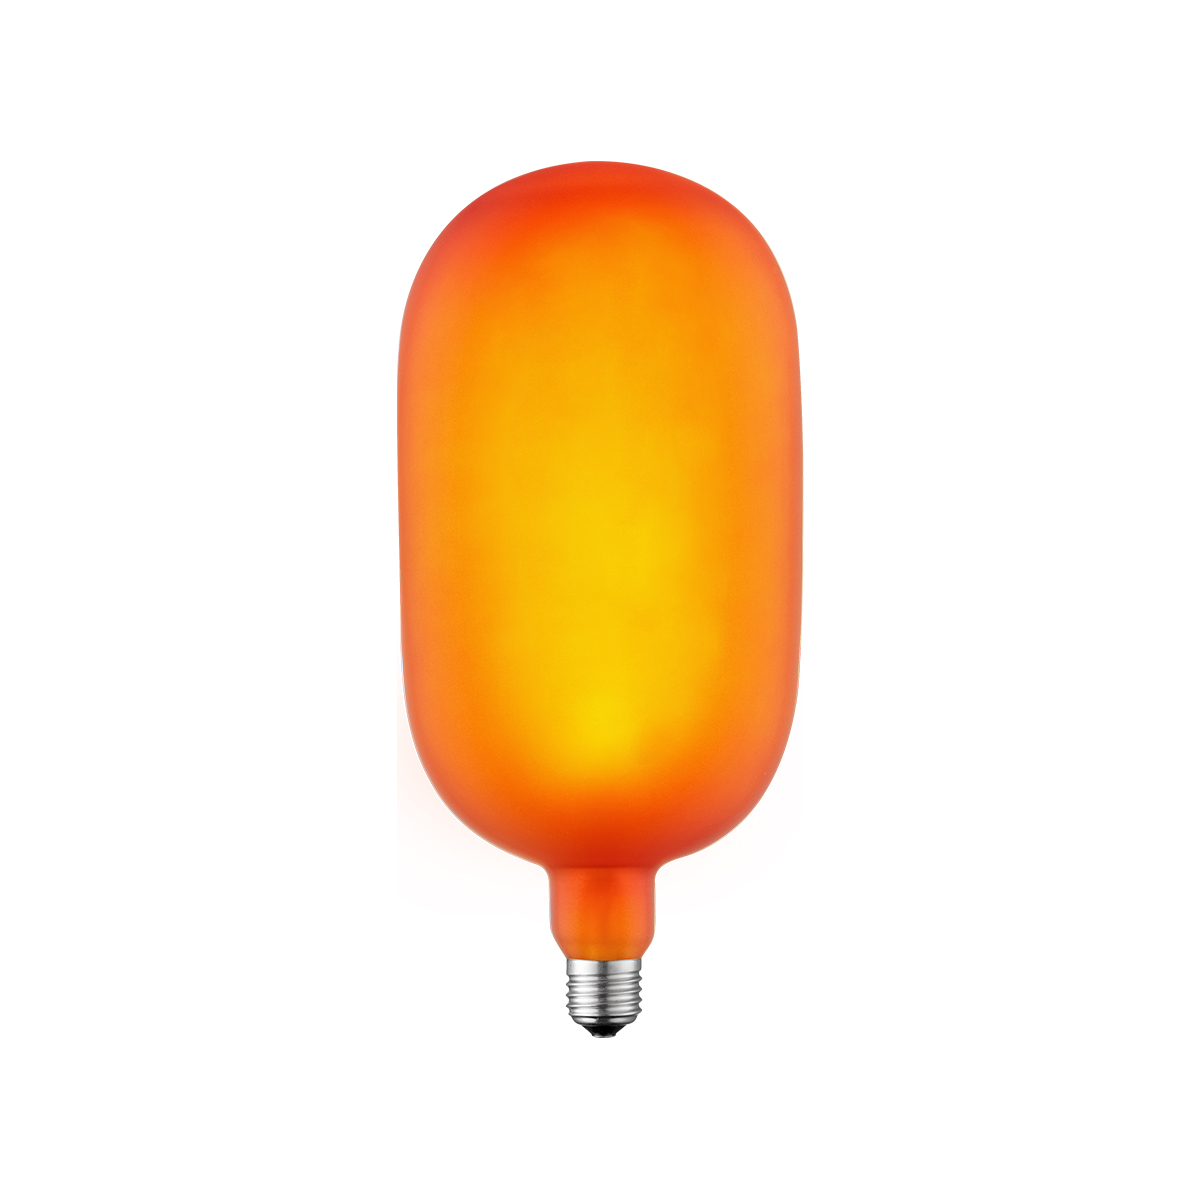 Tangla lighting - TLB-9001-04OG - LED Light Bulb Single Spiral filament - 4W orange opal - medium - non dimmable - E27